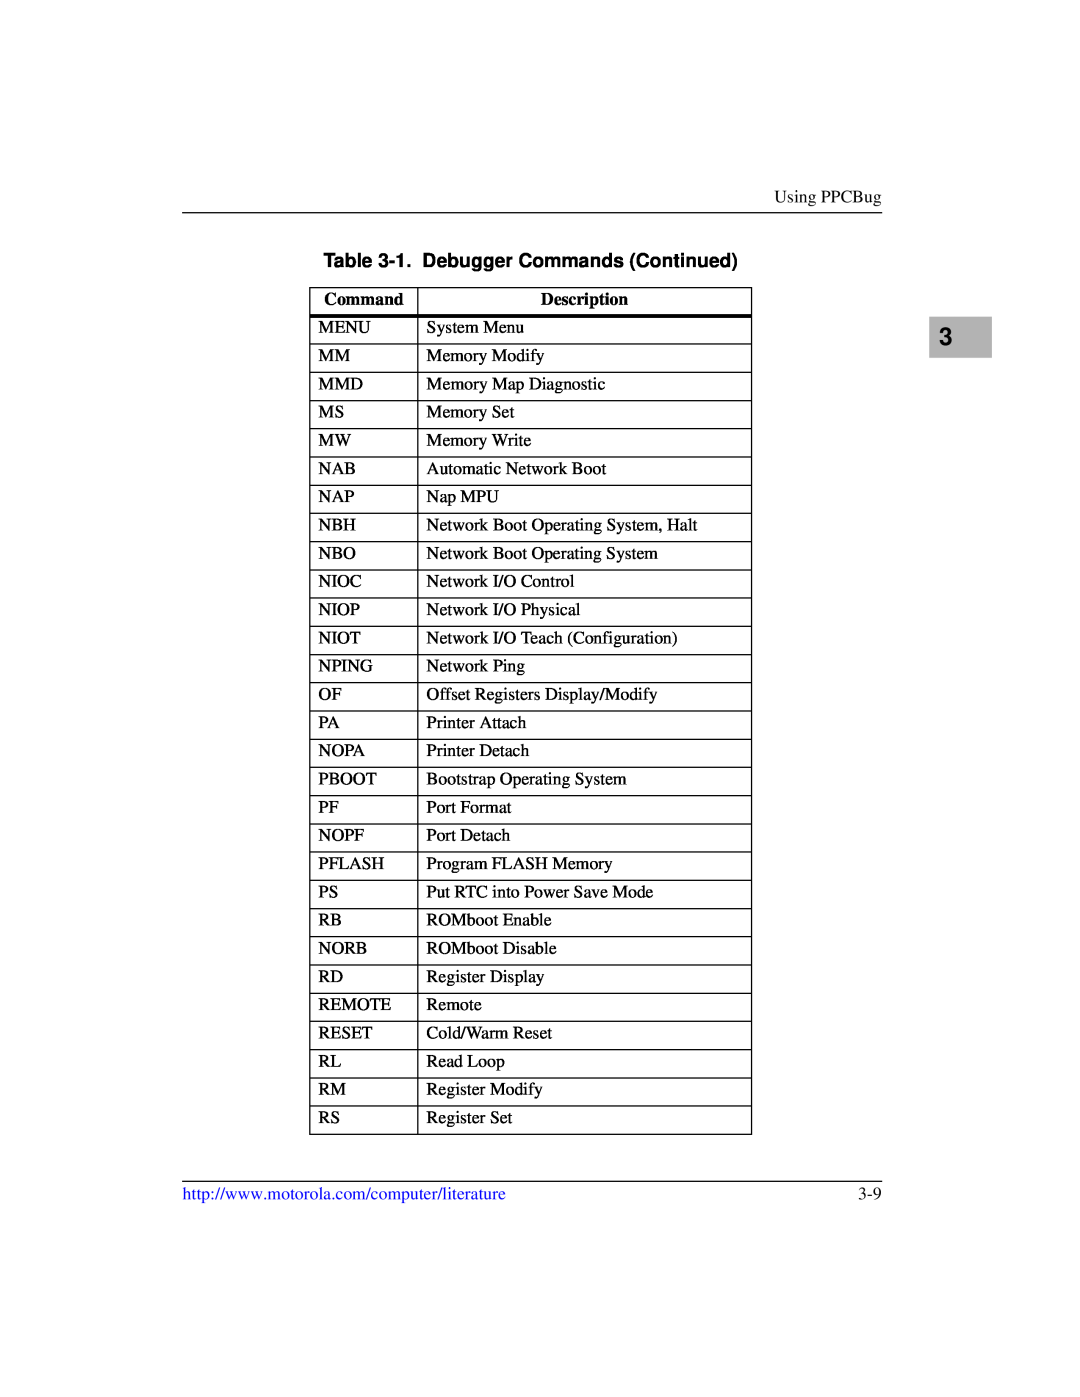 Motorola IH5, MCPN750A manual 1. Debugger Commands Continued, Description 